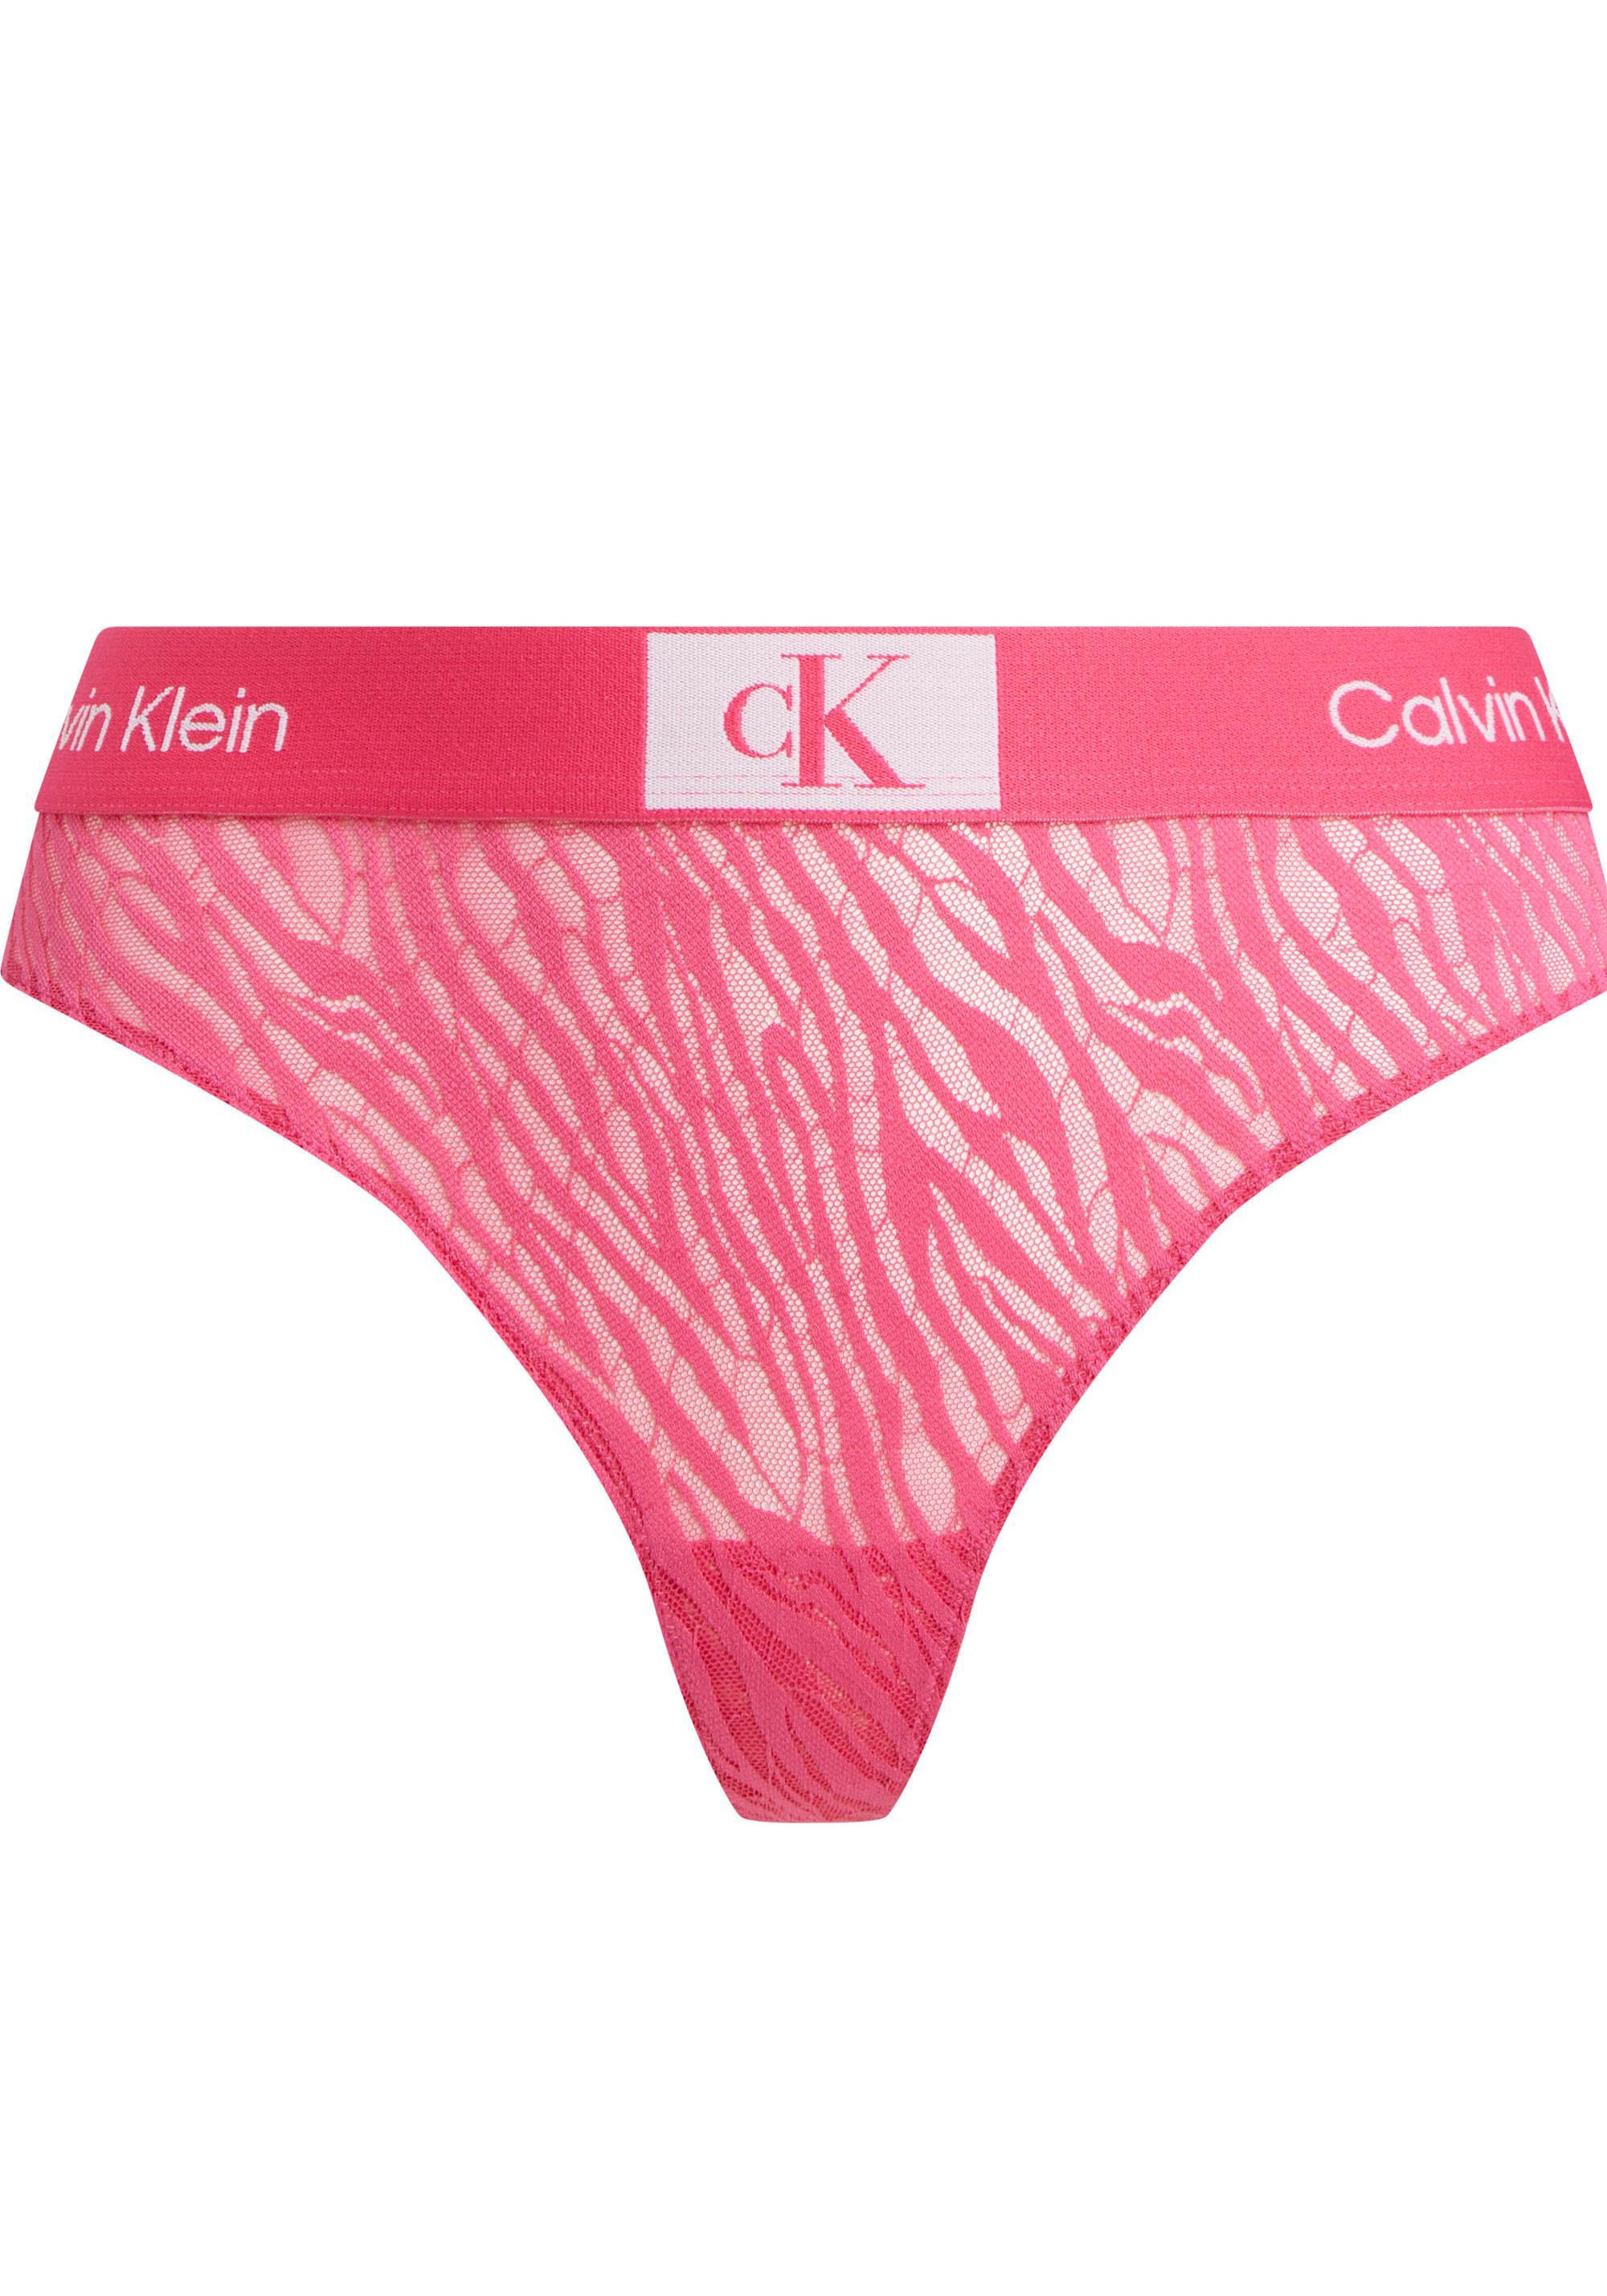 Calvin Klein Underwear Calvin KLEIN T-String »MODERN THONG« s...